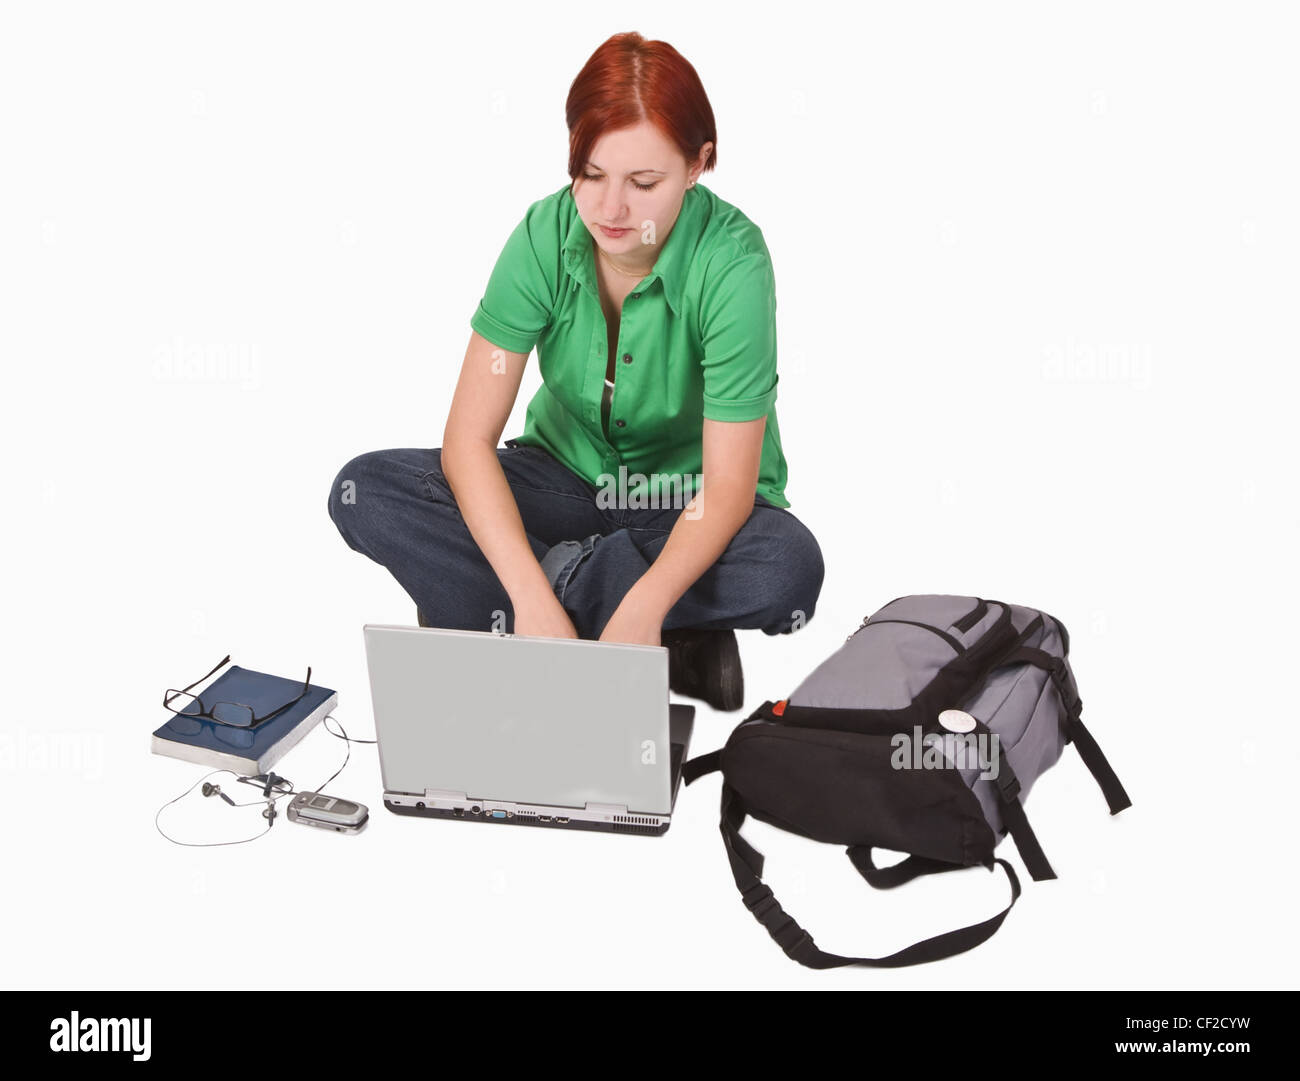 Rothaarige Teenager-Mädchen mit vielen Produkten rund um ihre Arbeit auf einem Laptop. Stockfoto